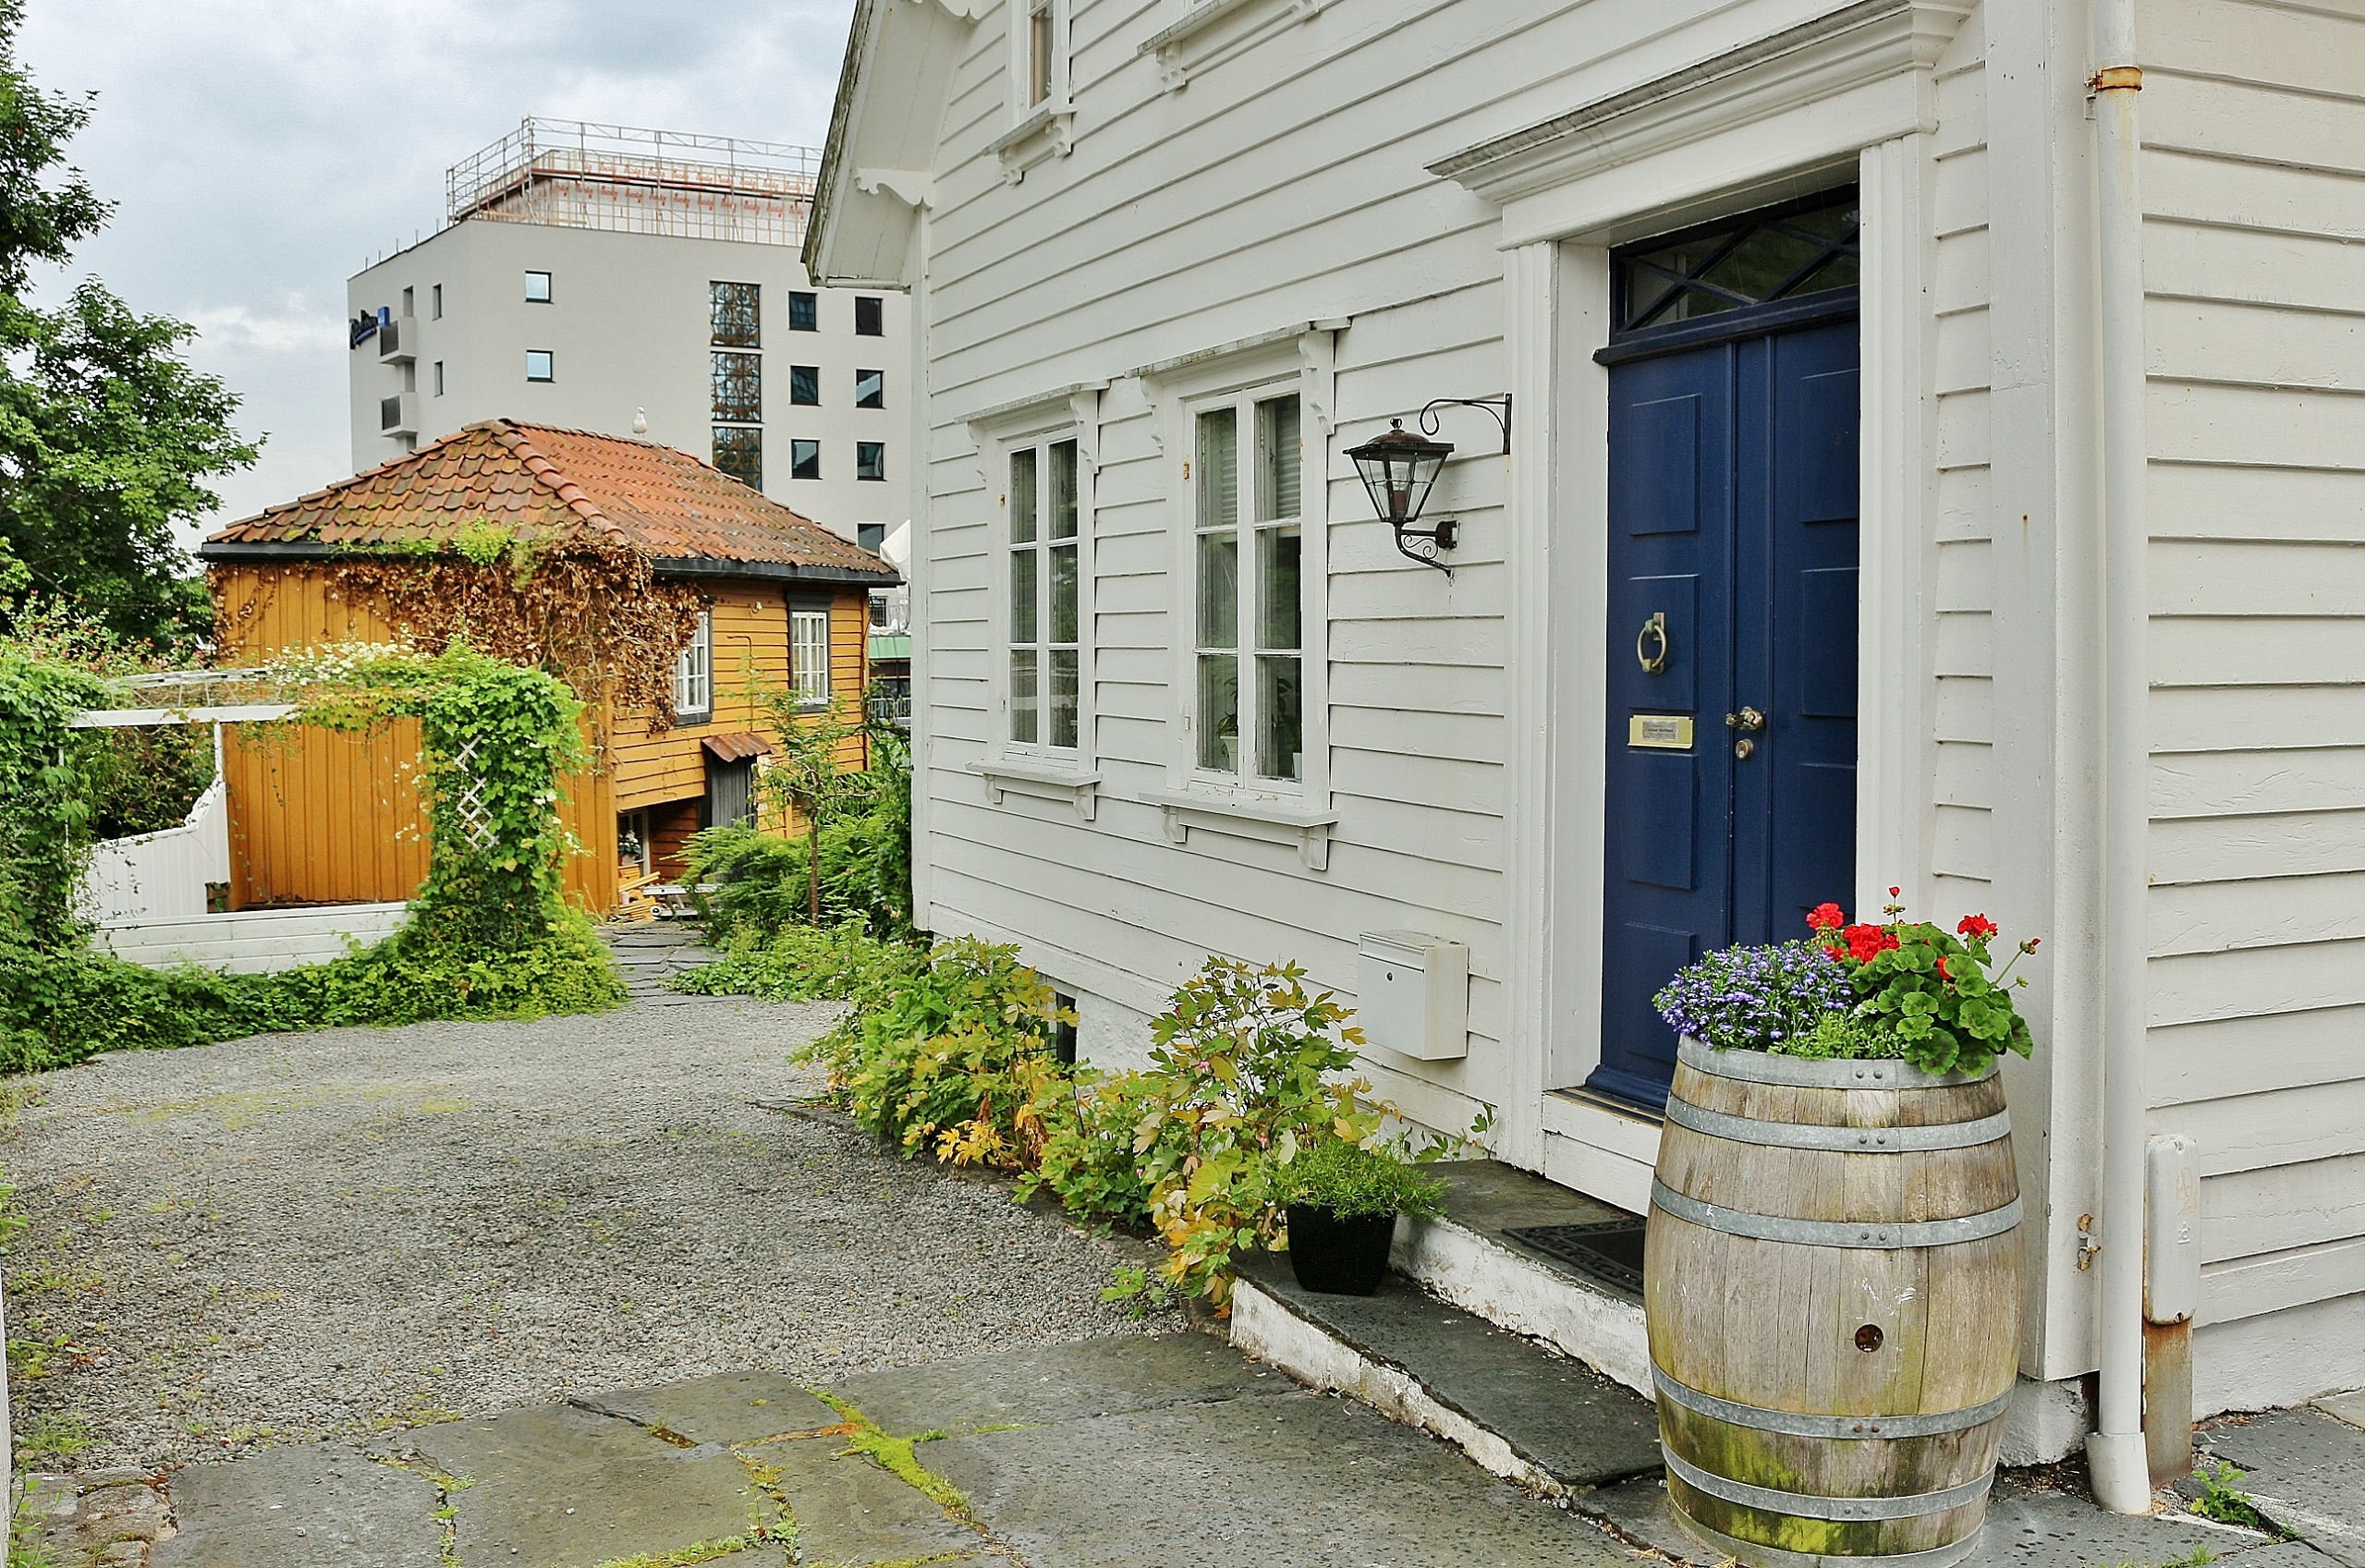 Foto: Zona residencial - Stavanger (Rogaland), Noruega